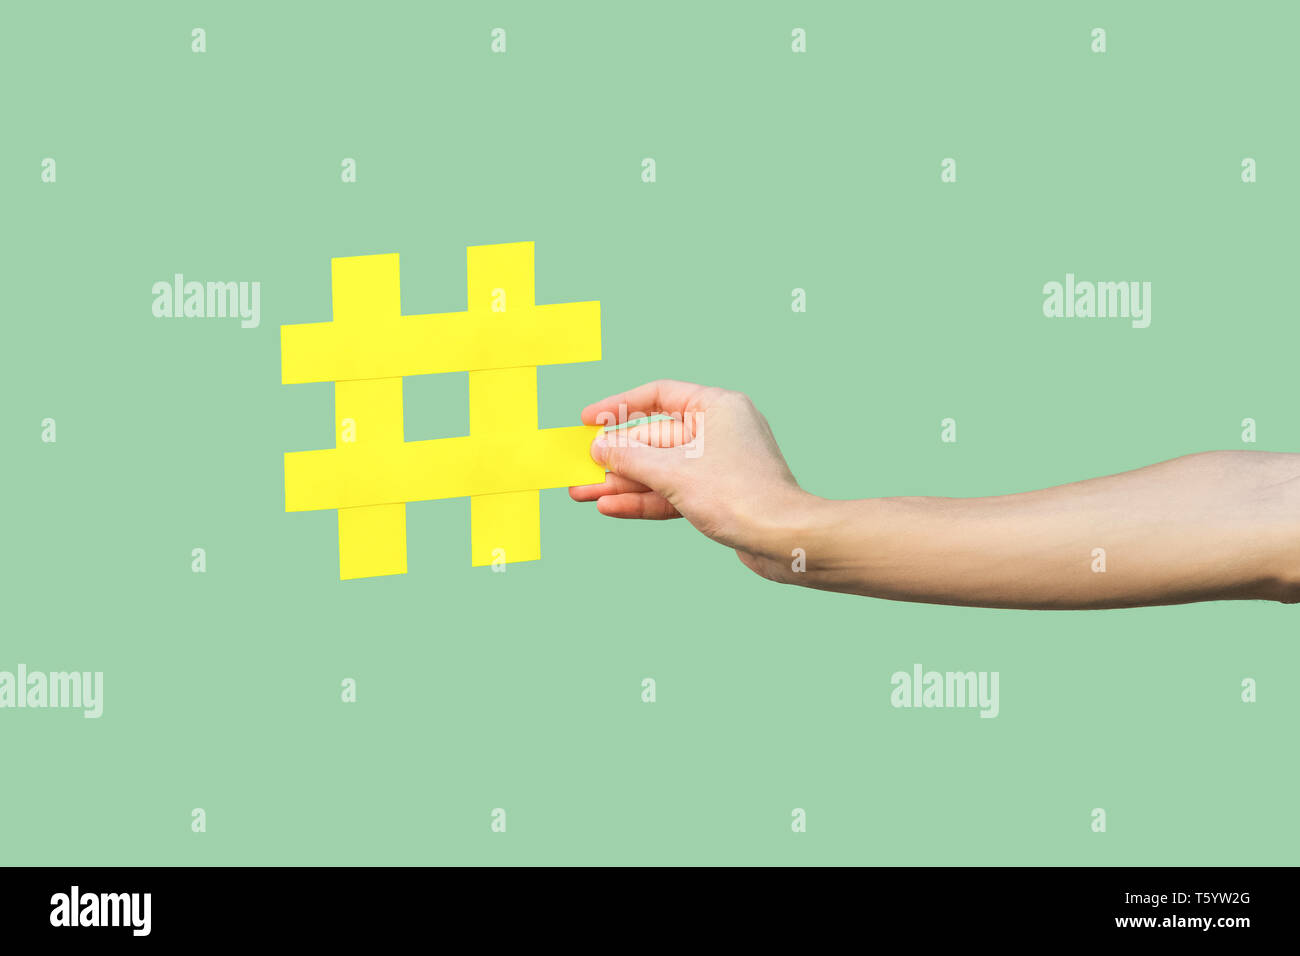 Social media Konzept, Nahaufnahme Portrait von Hand mit großen grossen gelben Hash Tag unterzeichnen. Hallenbad, isoliert, Kopie, grüner Hintergrund, Marketing Symbo Stockfoto